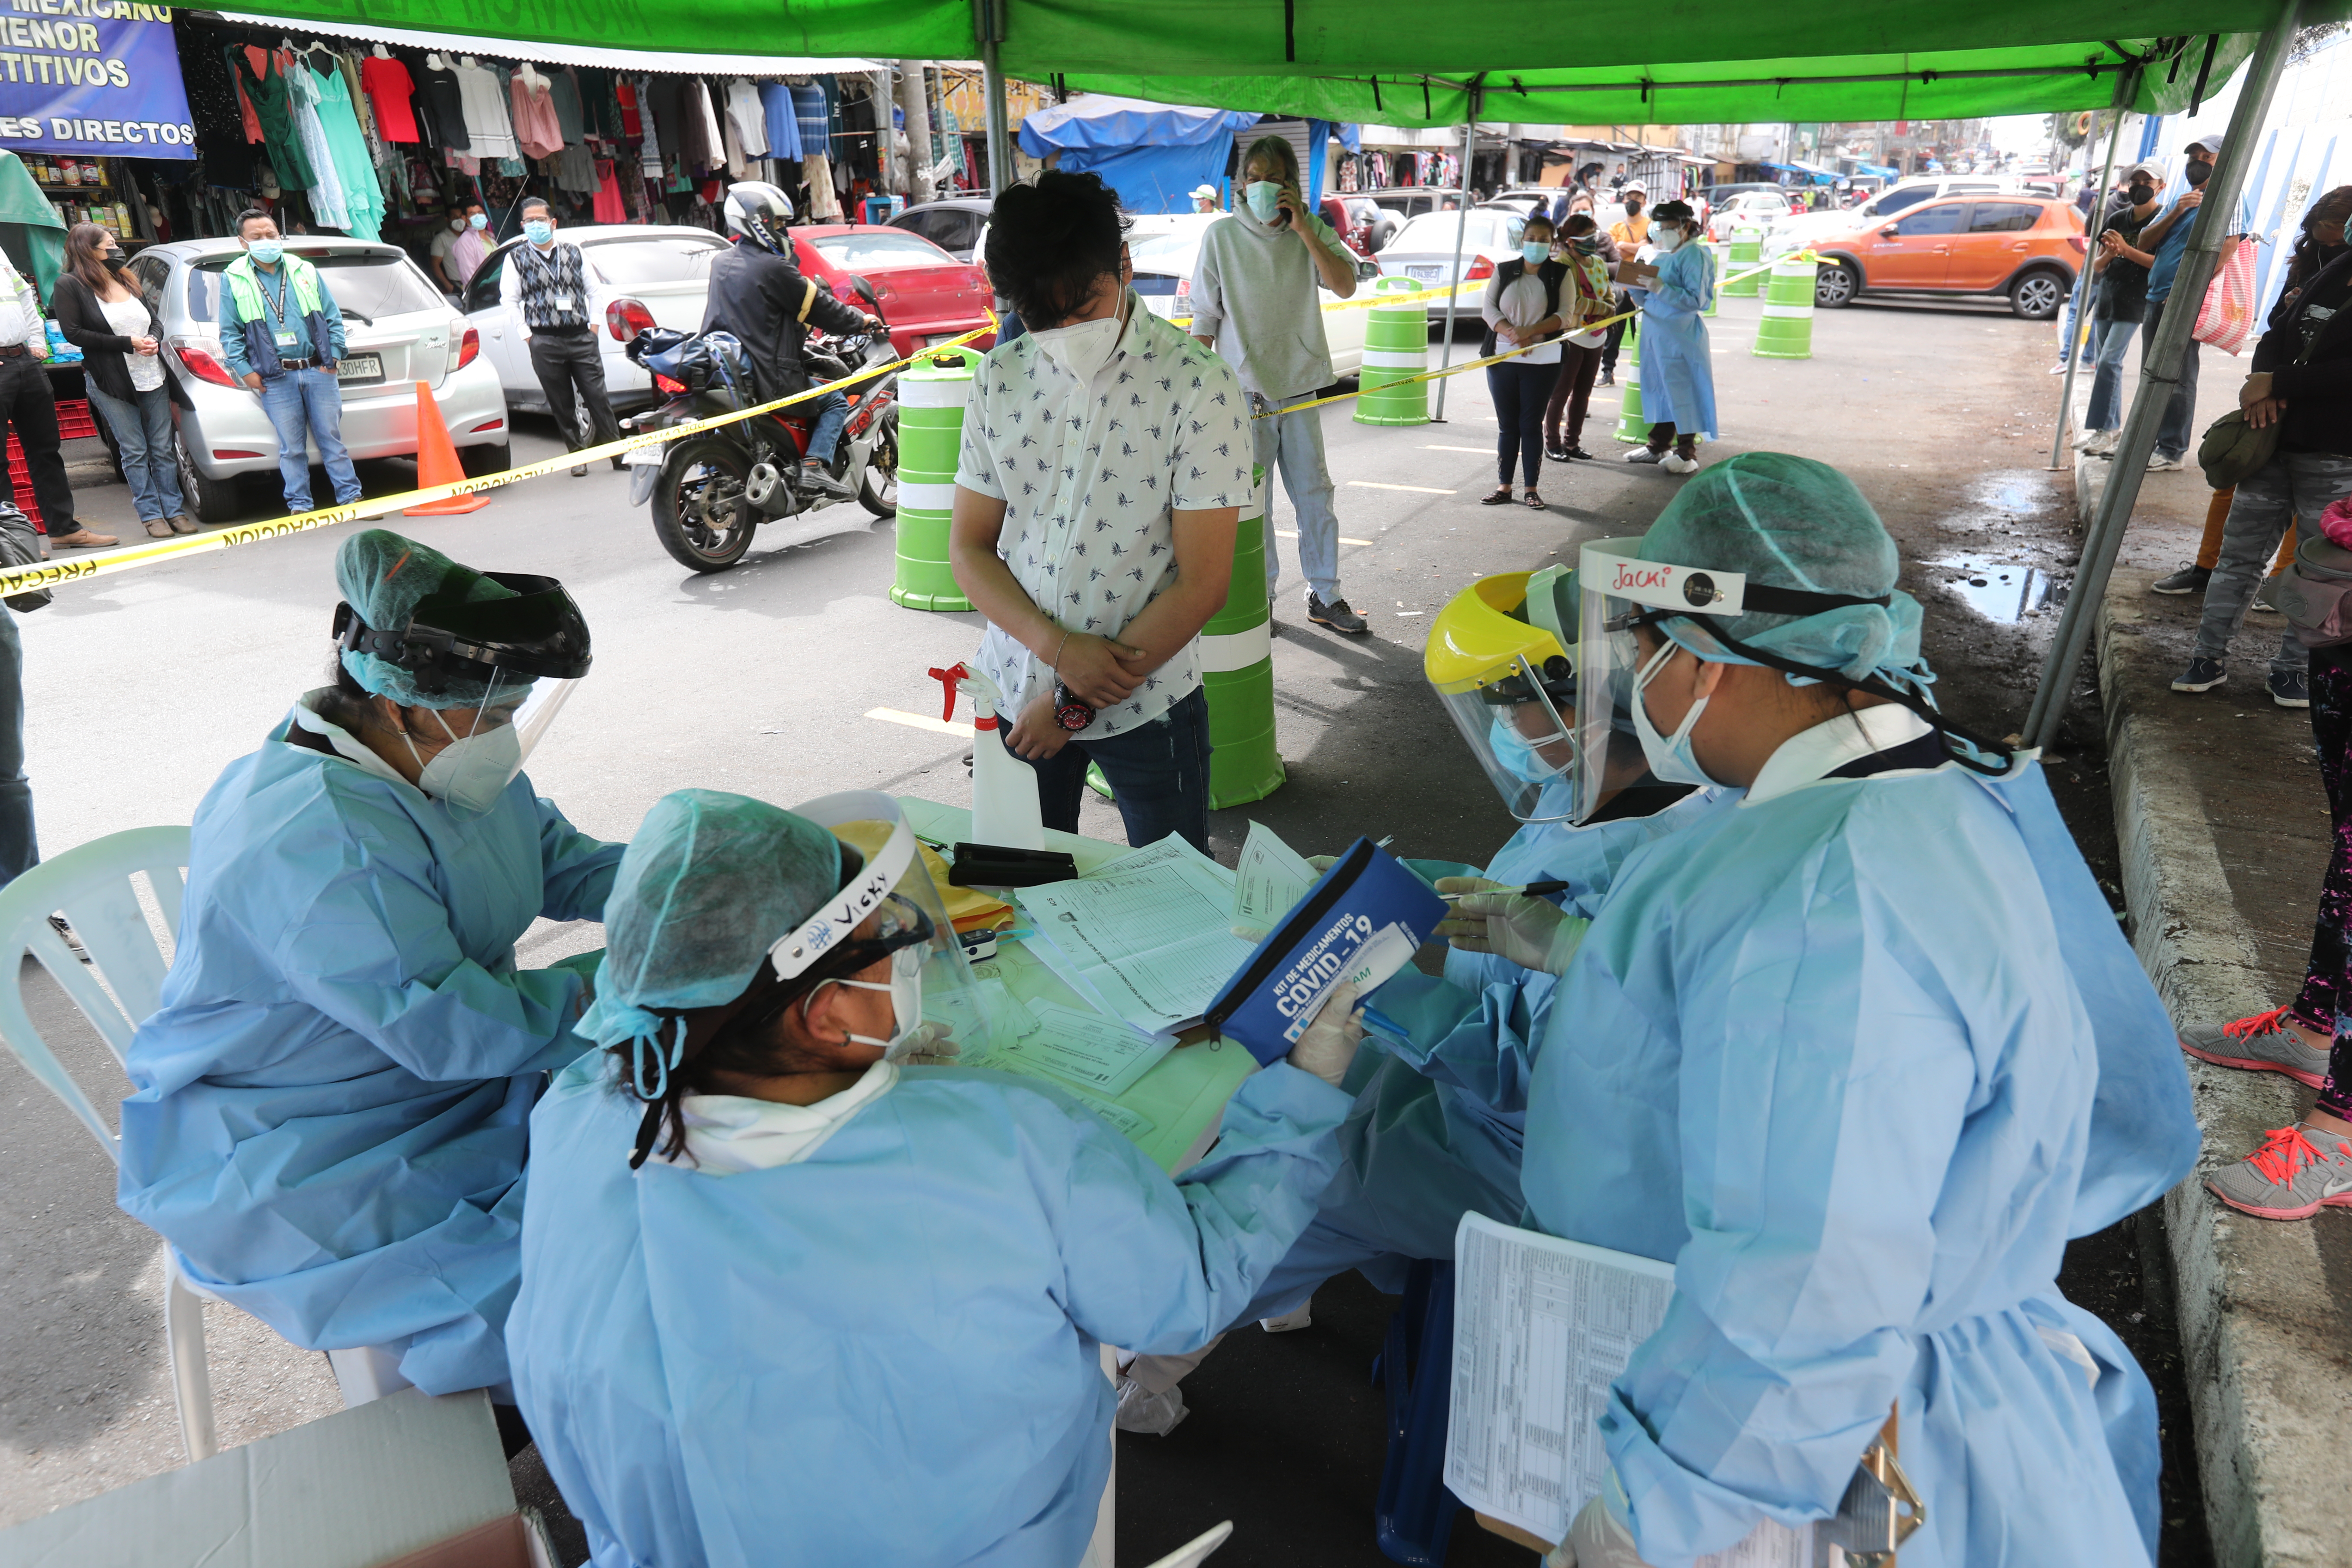 Los casos de coronavirus siguen en aumento en Guatemala. (Foto: Hemeroteca PL)